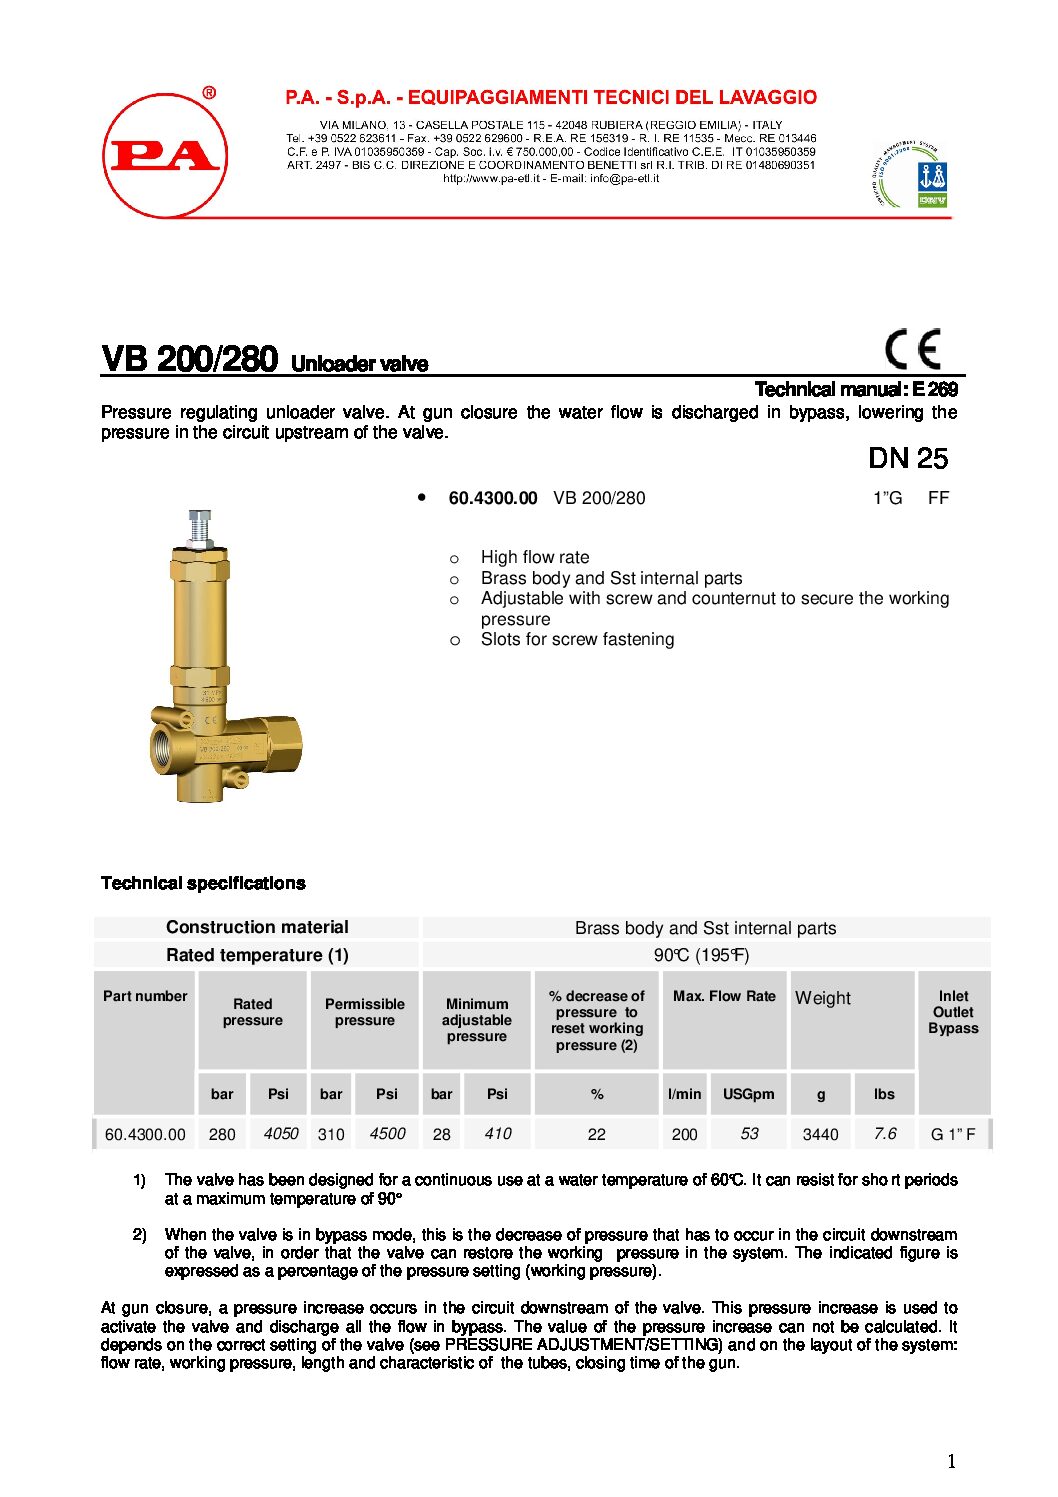 PA VB200/280 Unloader technical manual